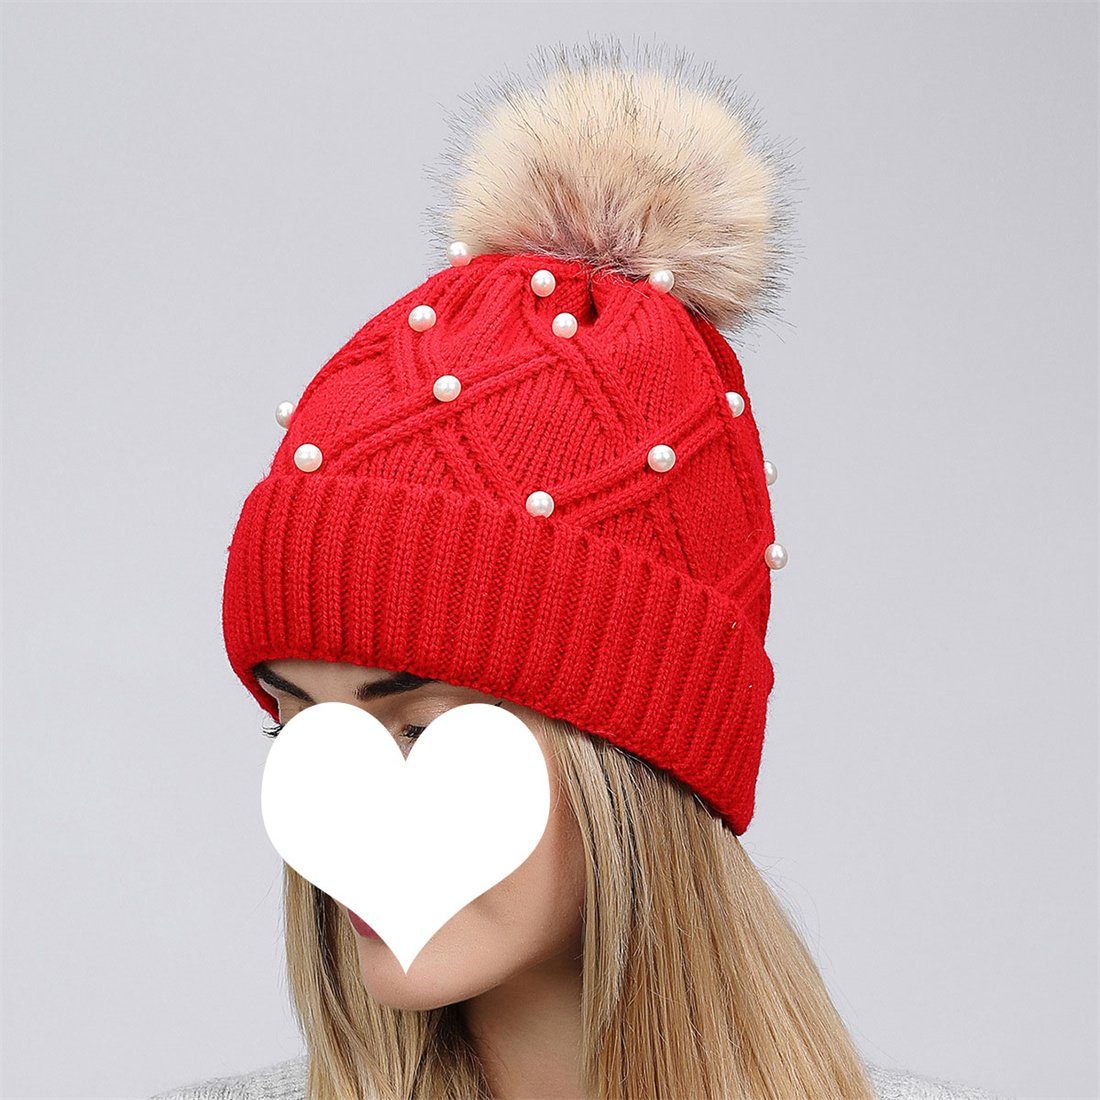 Woolen Cap Cap, Hairball Strickmütze Winter Knitted Fashion Warm Thickened DÖRÖY Weiß Women's